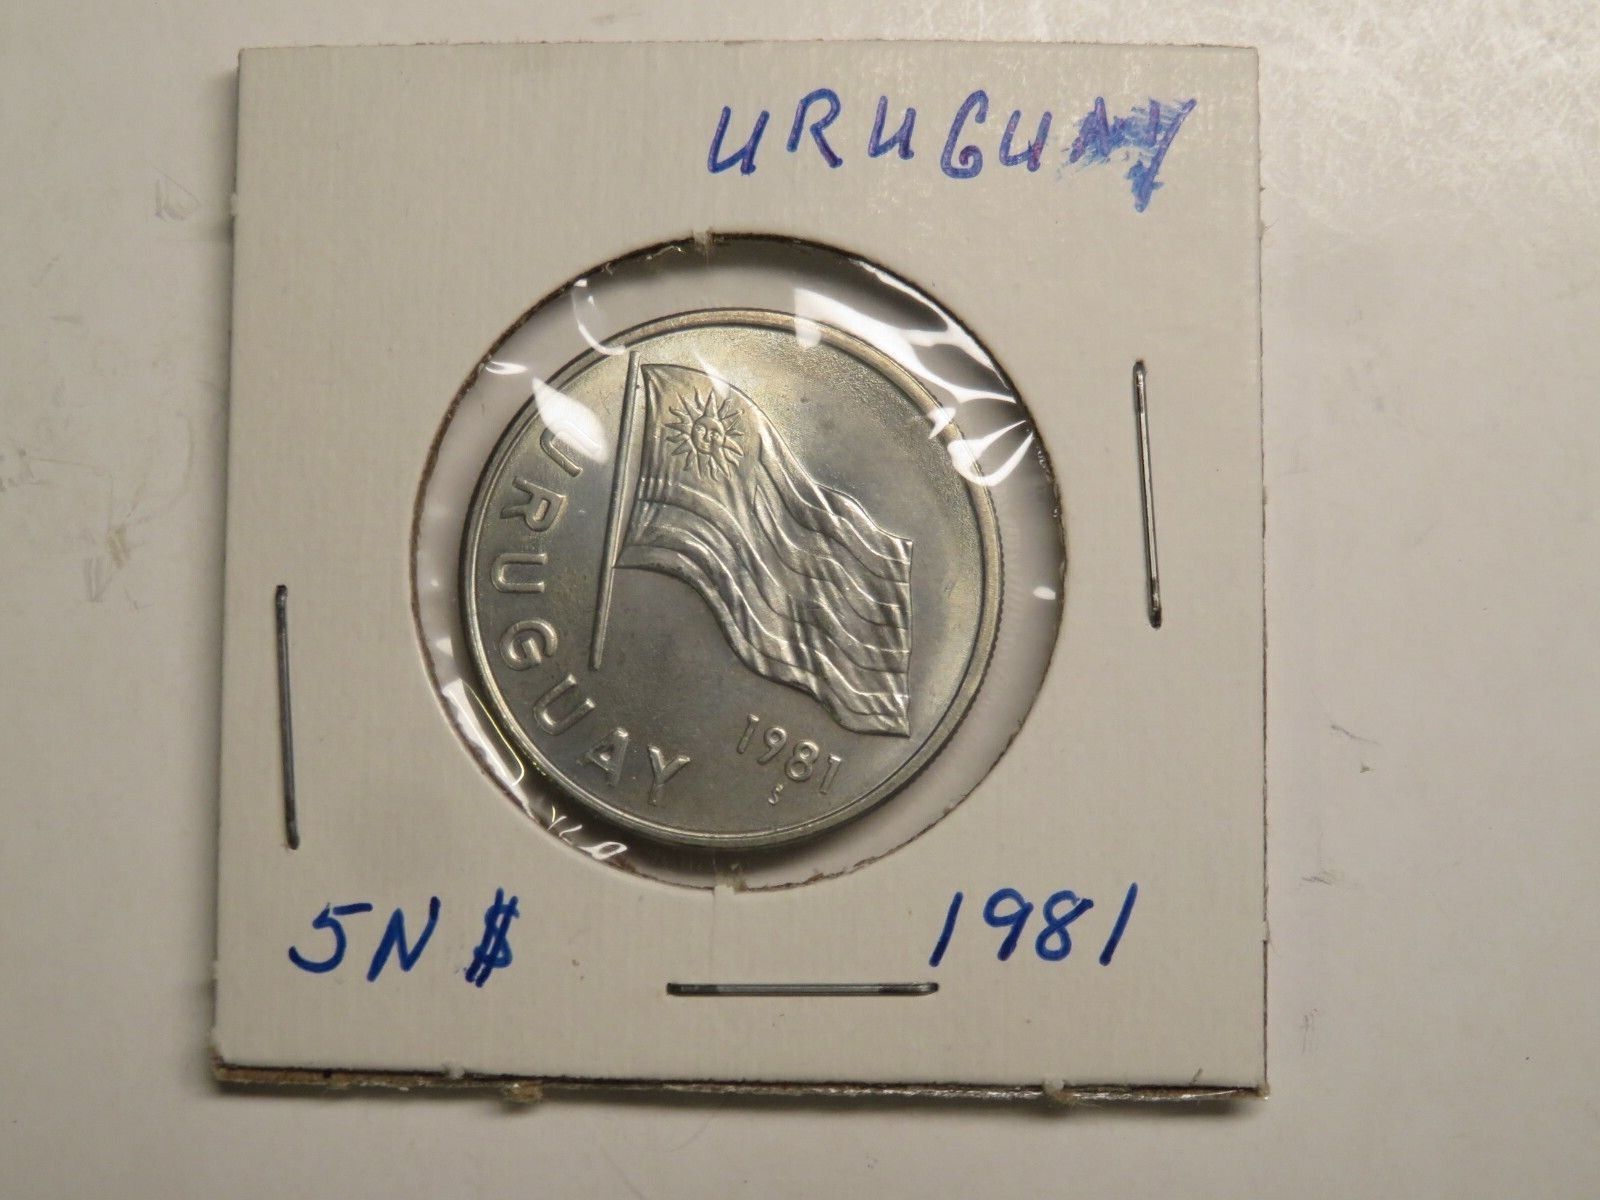 1981 5 Nuevo's Pesos Coin Uruguay